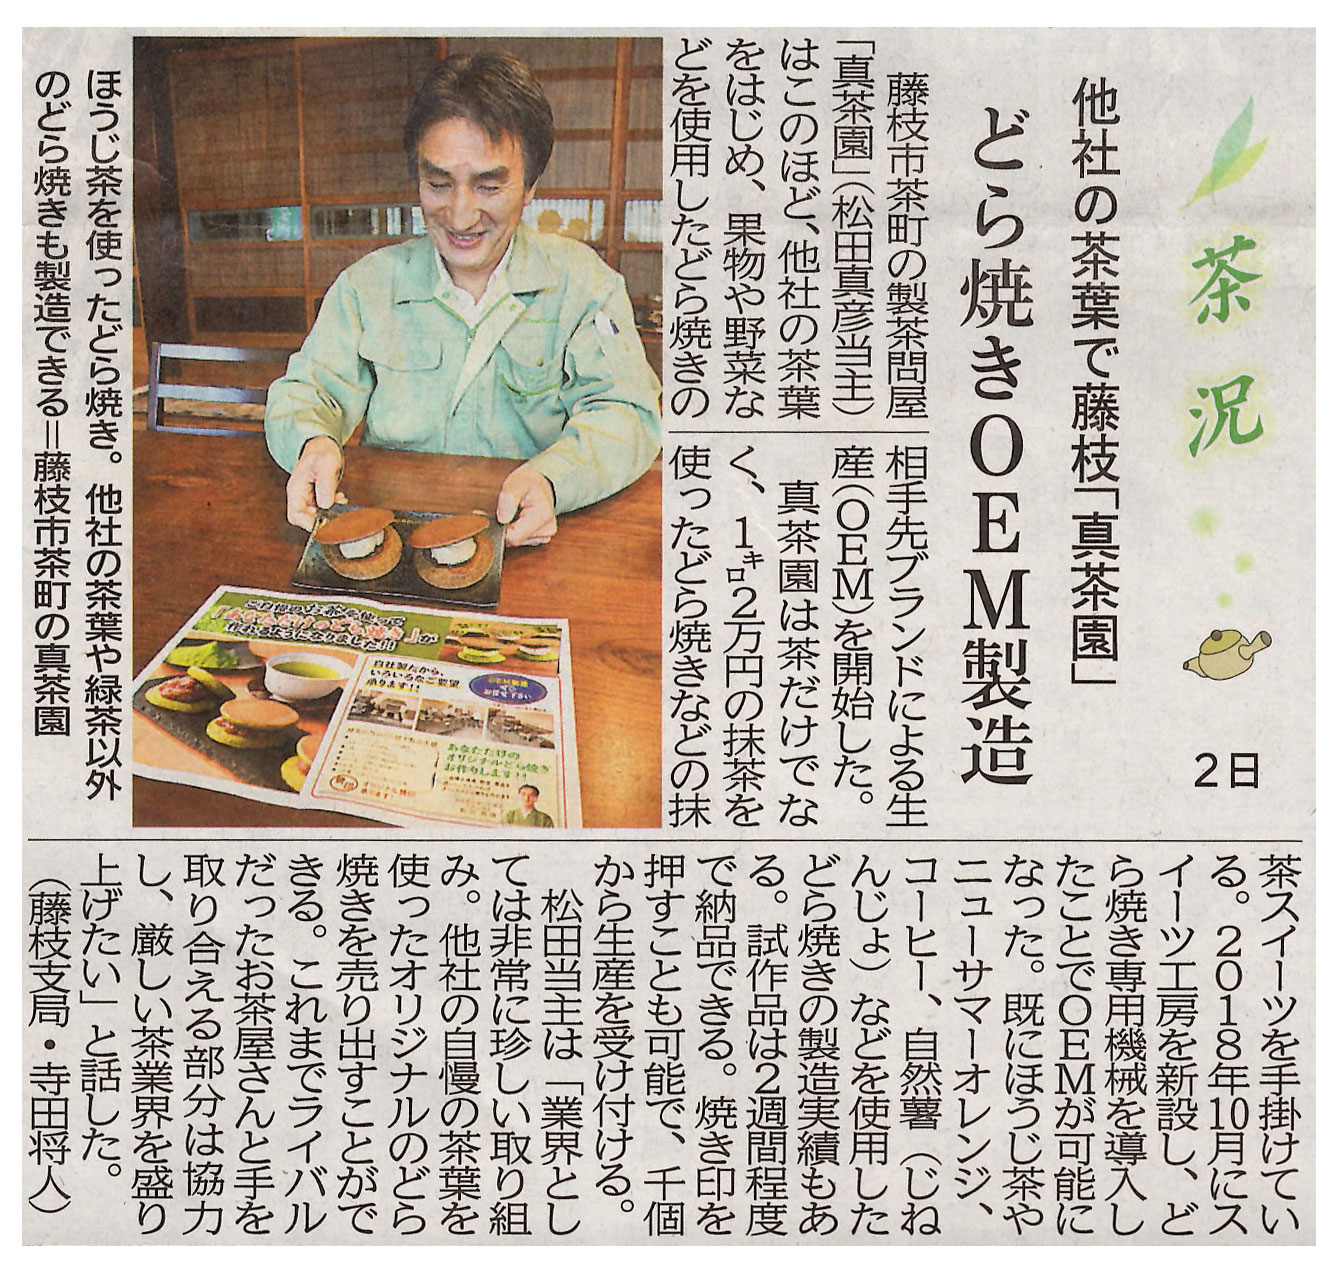 2019年12月 静岡新聞　他社の茶葉をはじめ、果物や野菜を使用した「どら焼きOEM製造」について掲載されました。